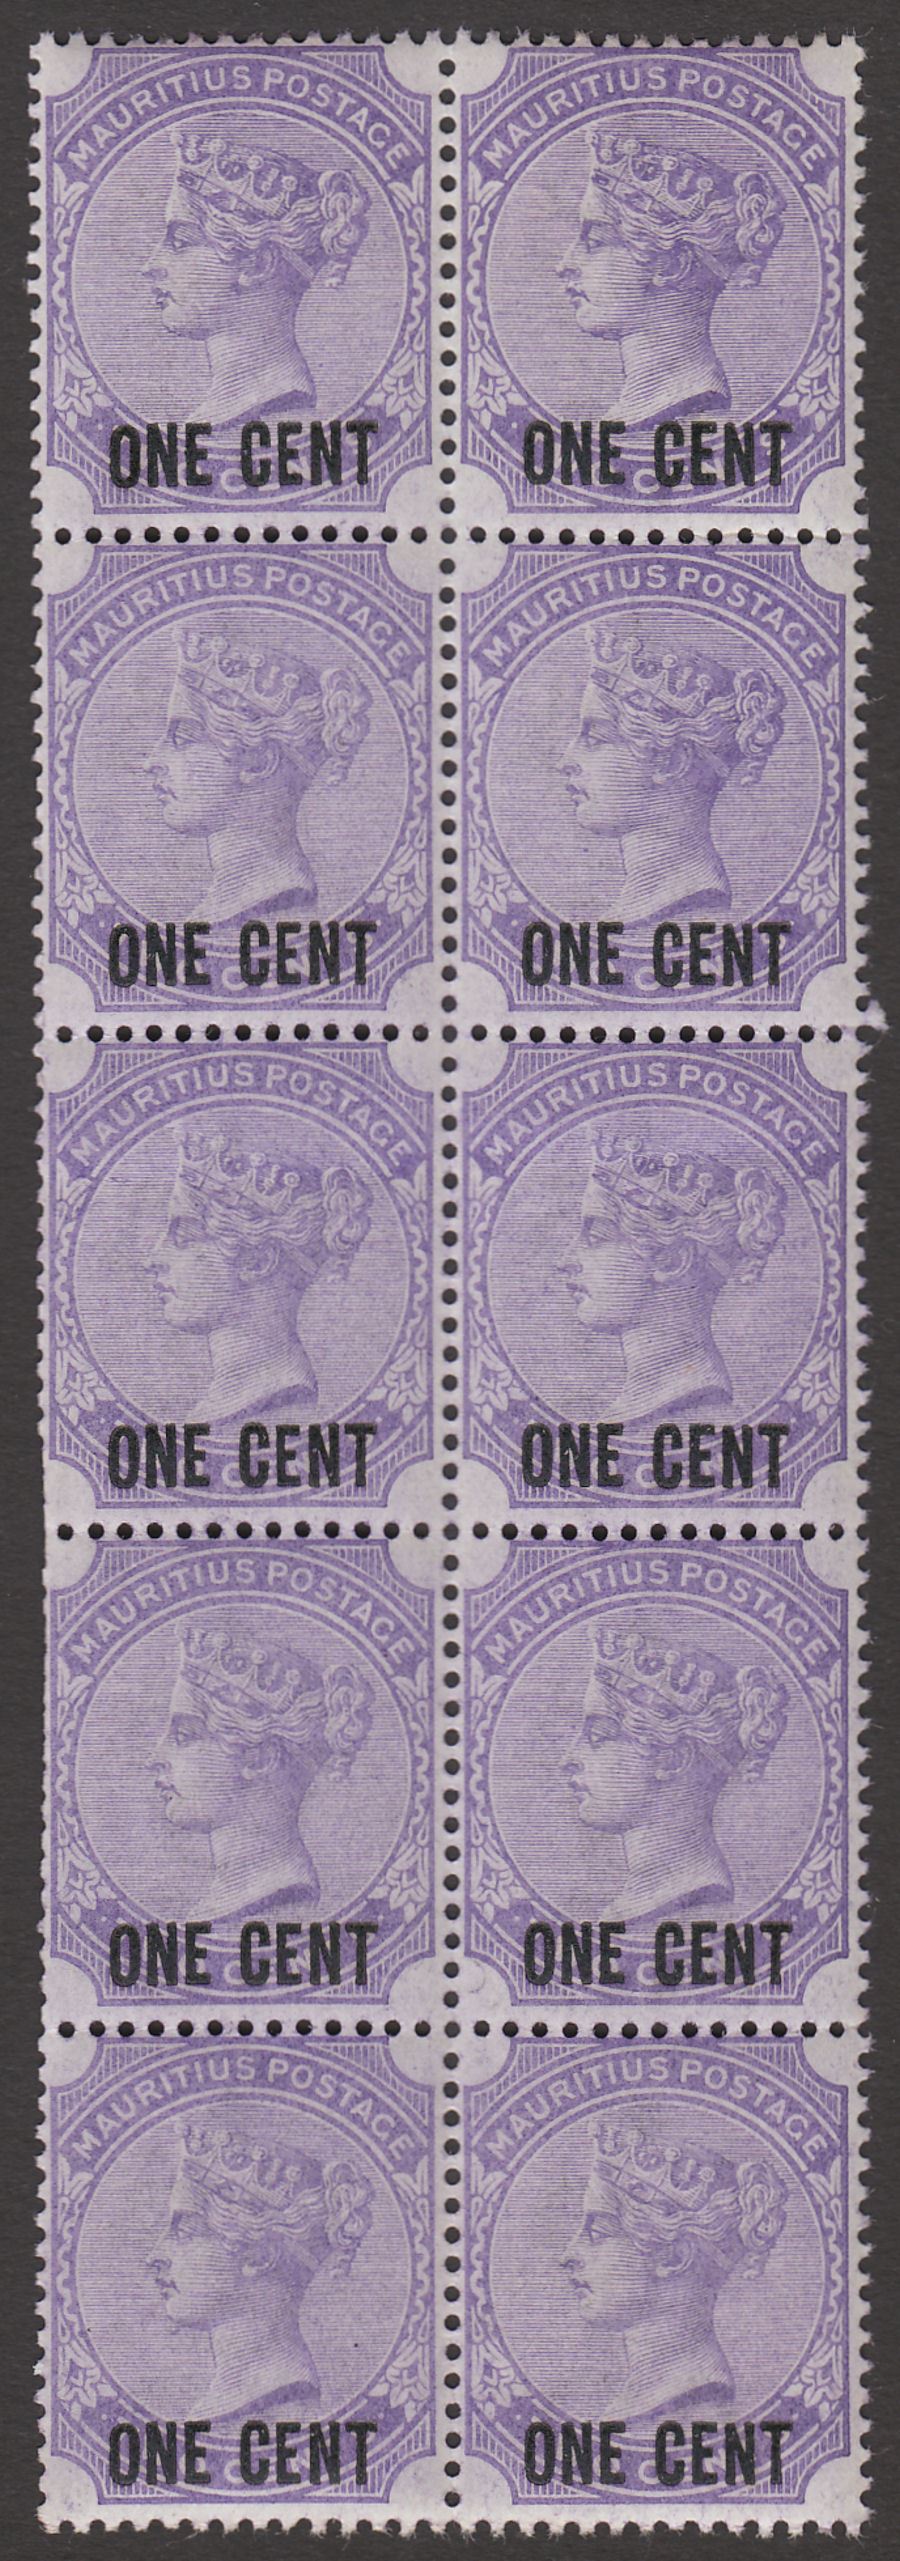 Mauritius 1893 QV 1c on 2c Pale Violet Surcharge Block of 10 Mint SG123 cat £25